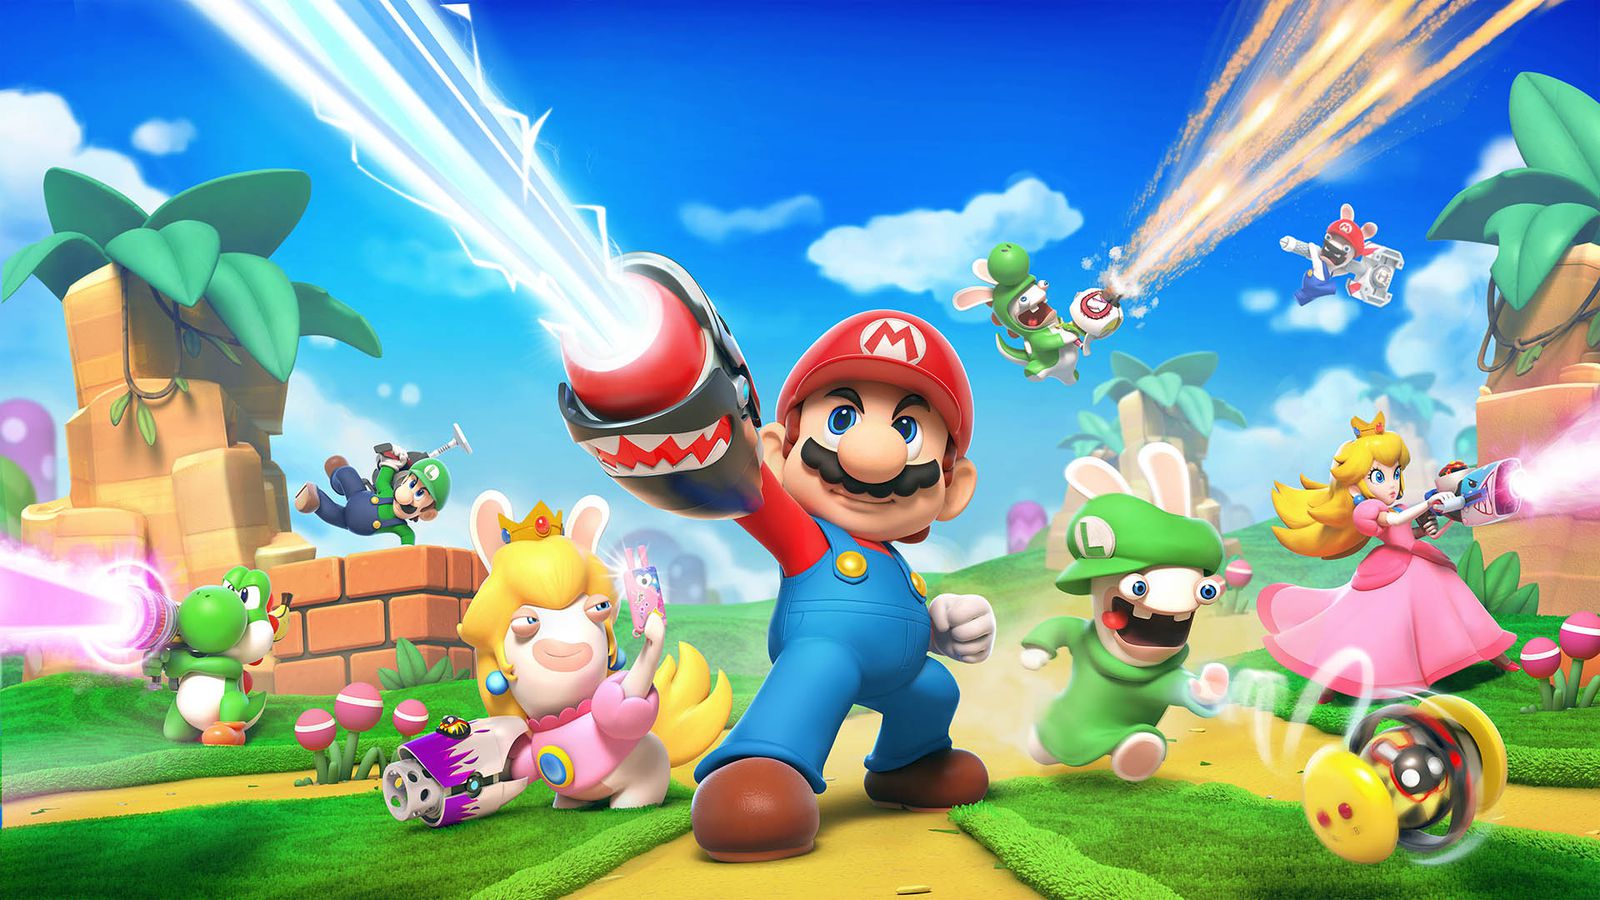 Imagem para Director de XCOM elogia Mario + Rabbids Kingdom Battle